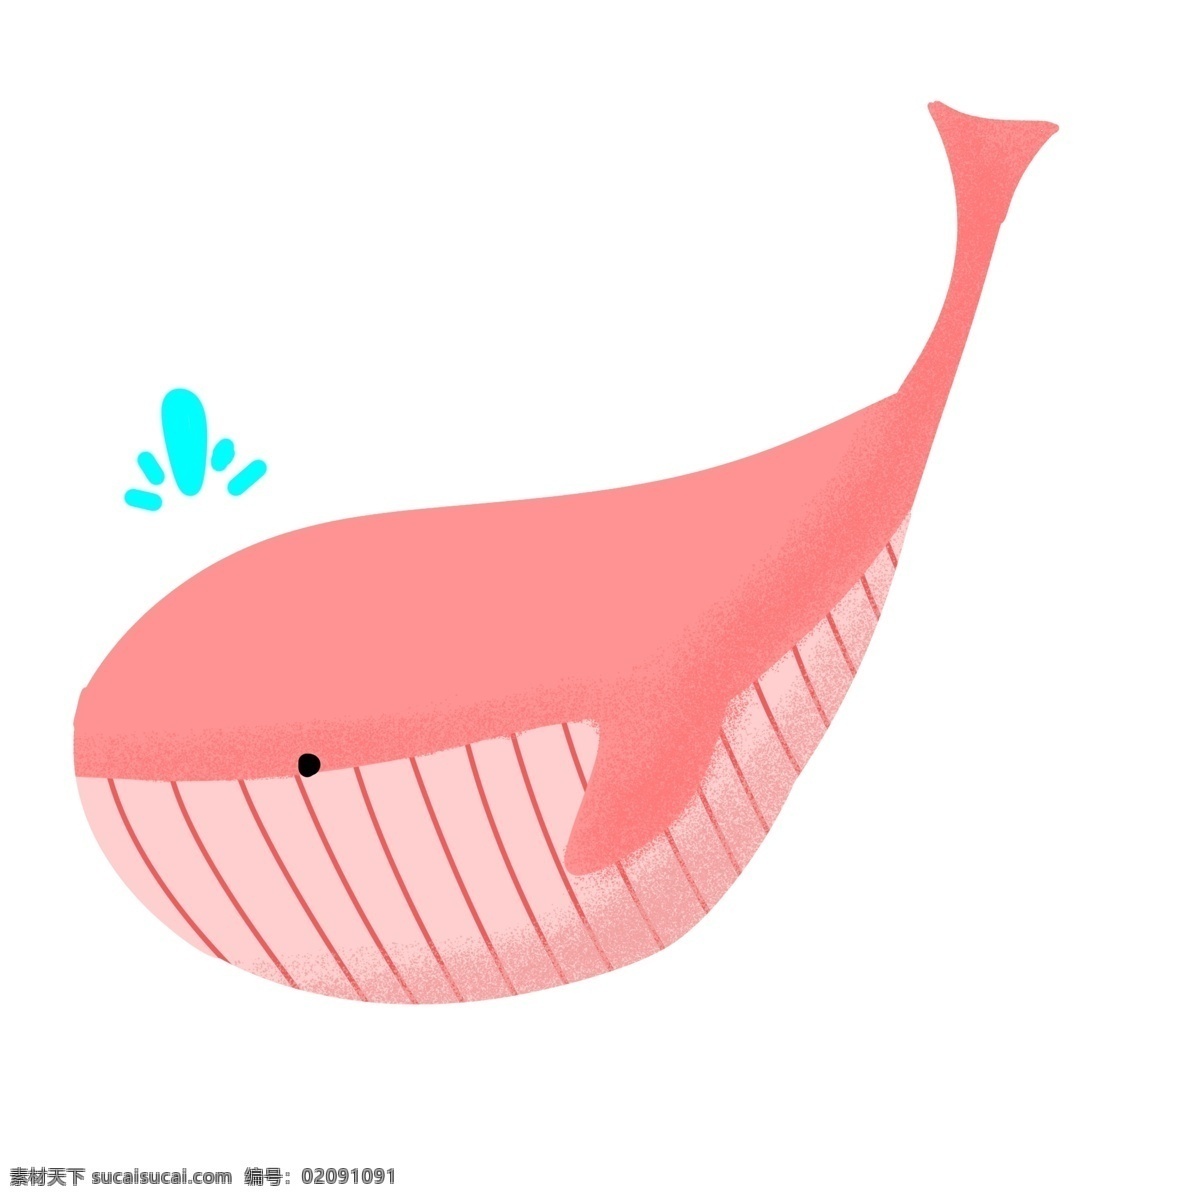 橘 粉色 可爱 鲸鱼 插画 可爱的鲸鱼 蓝色卡通水滴 海洋中的鲸鱼 手绘鲸鱼插画 动物 橘粉色的鲸鱼 粉色条纹肚子